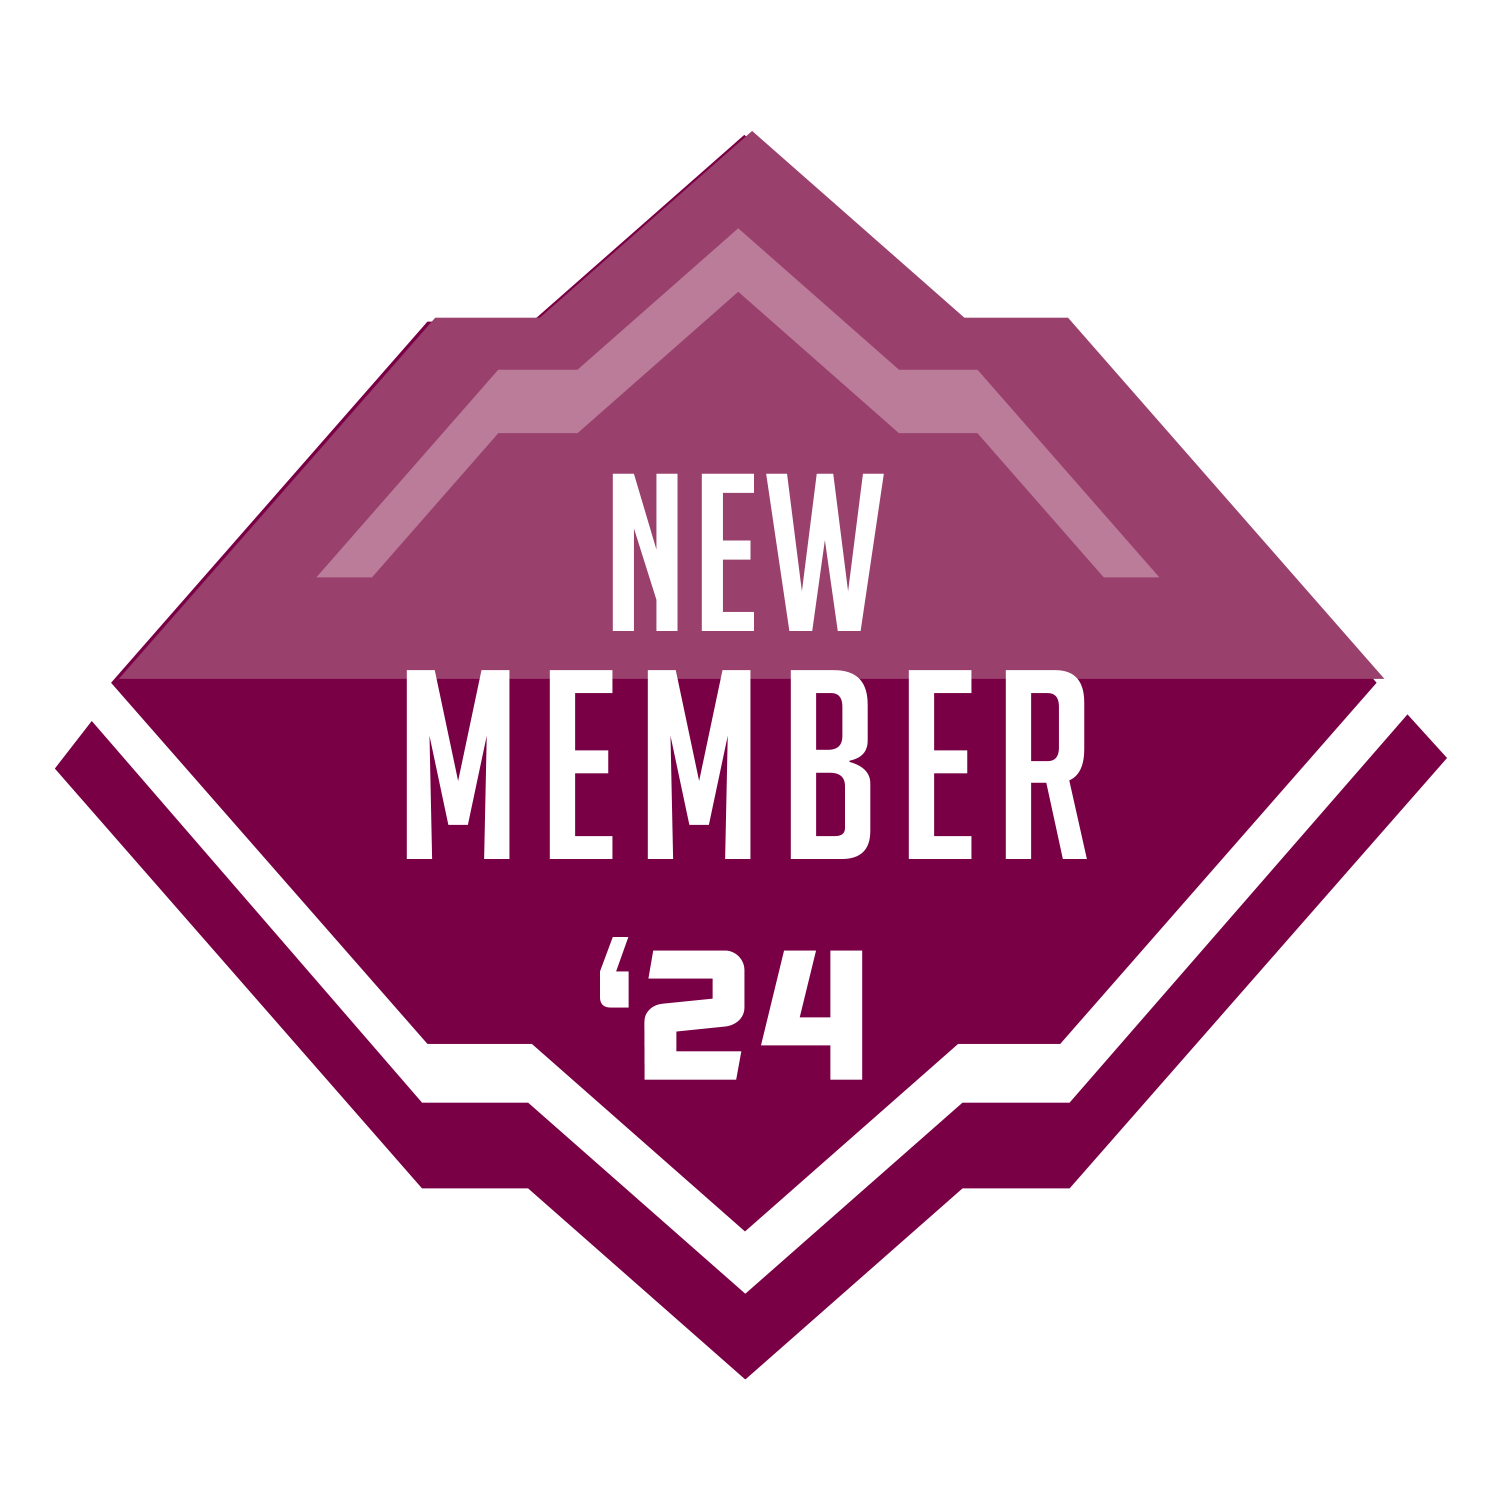 new member 24 badge